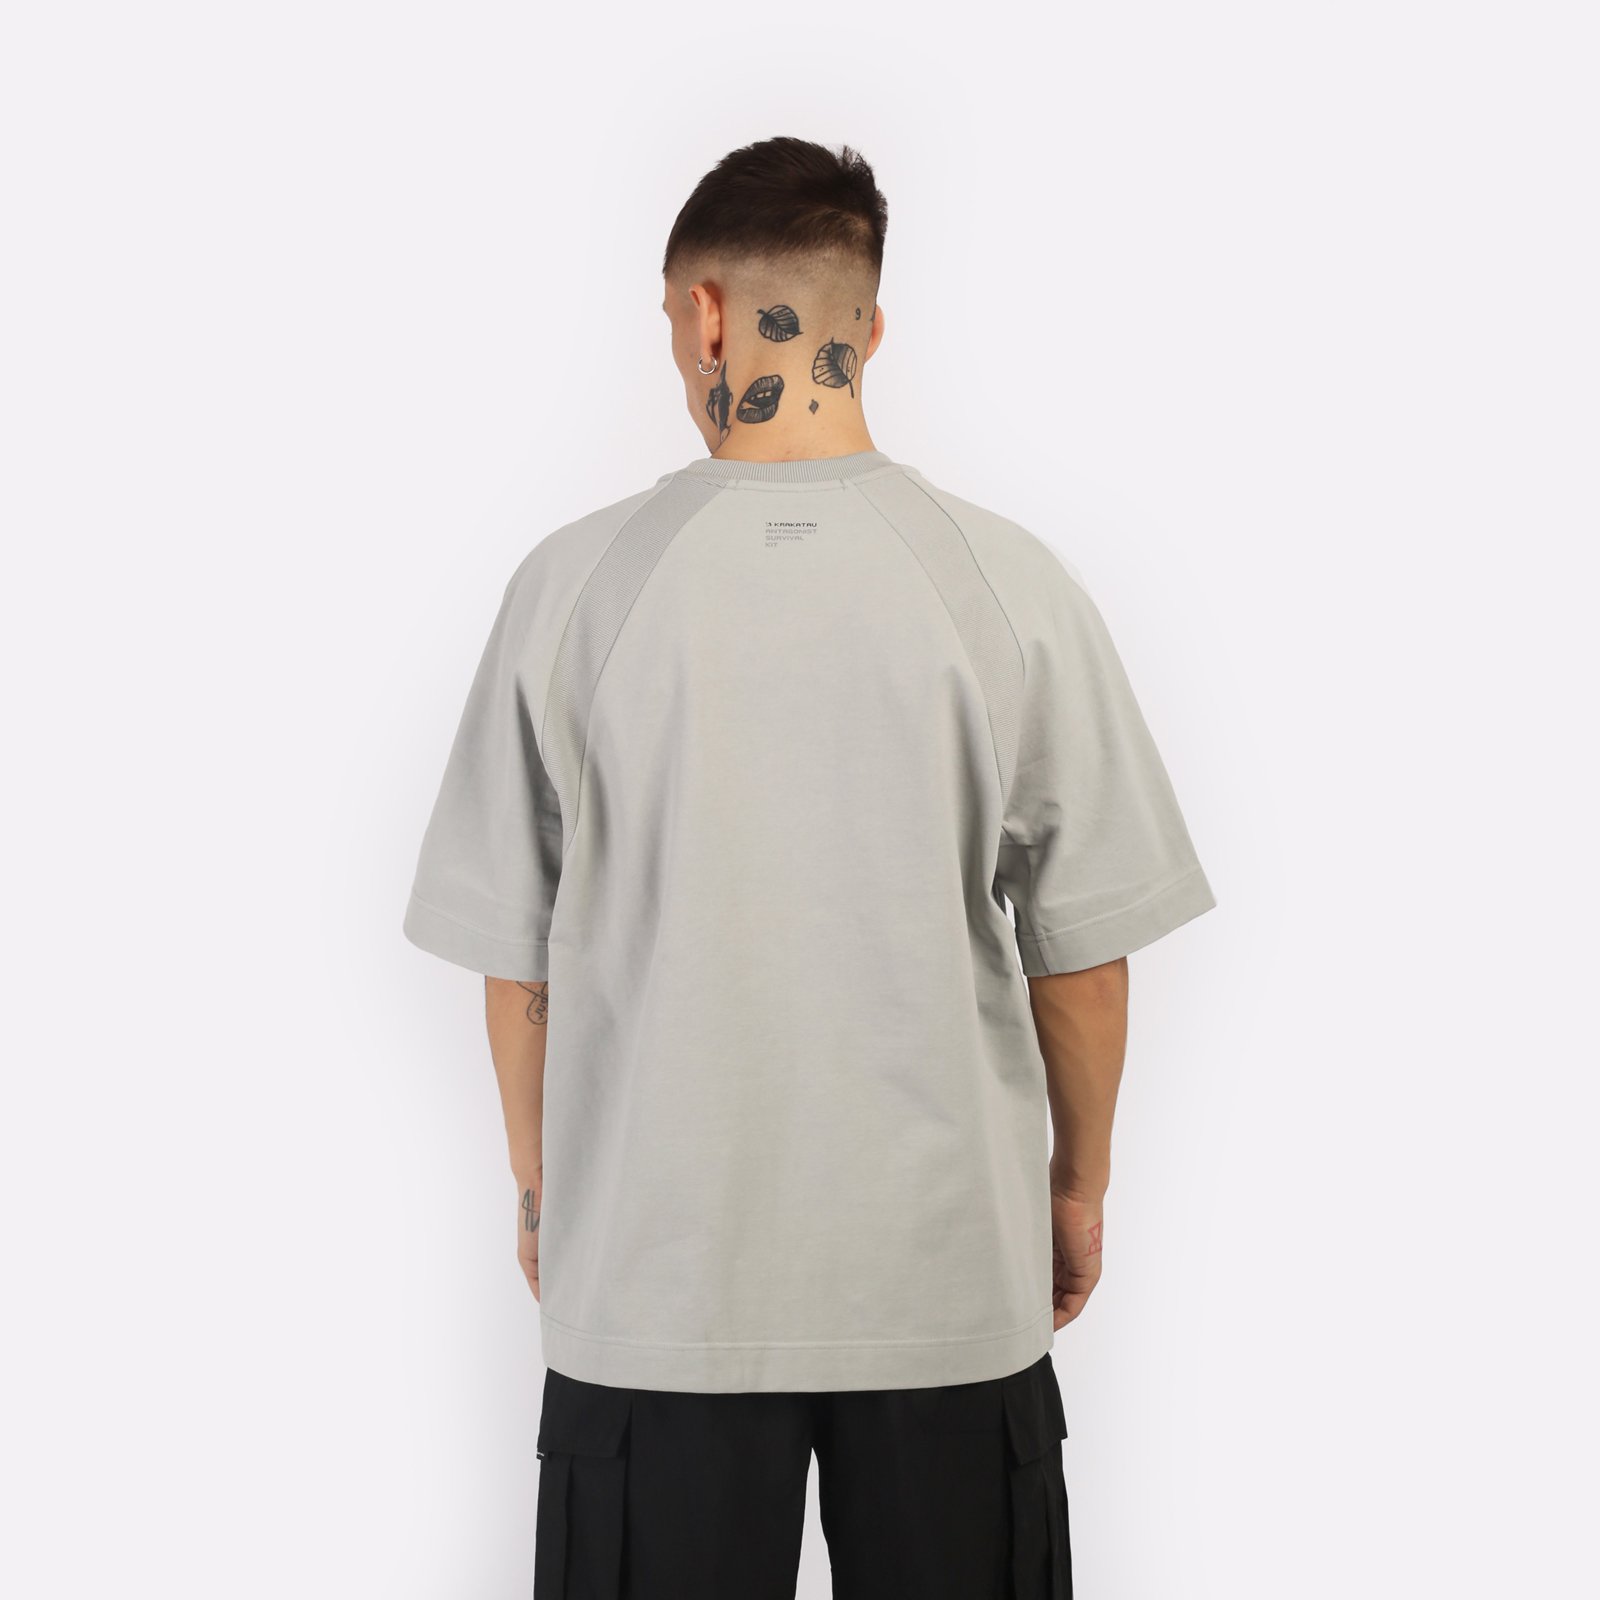 мужская футболка KRAKATAU Tm114  (Tm114-514-св-бамбук)  - цена, описание, фото 2